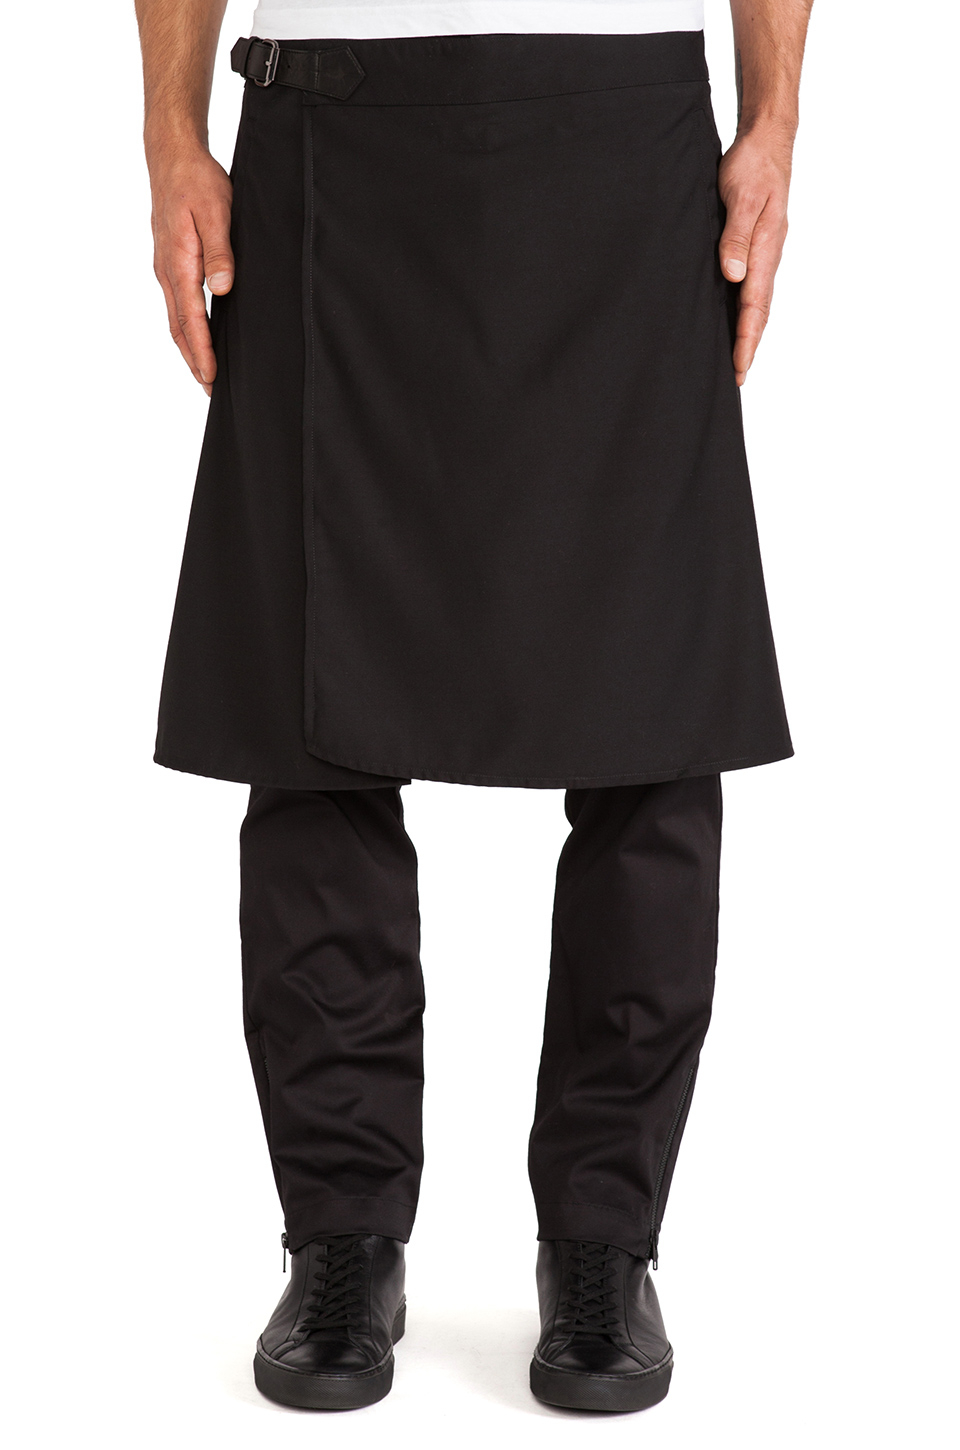 Lyst - Skingraft Skirt Pants in Black for Men